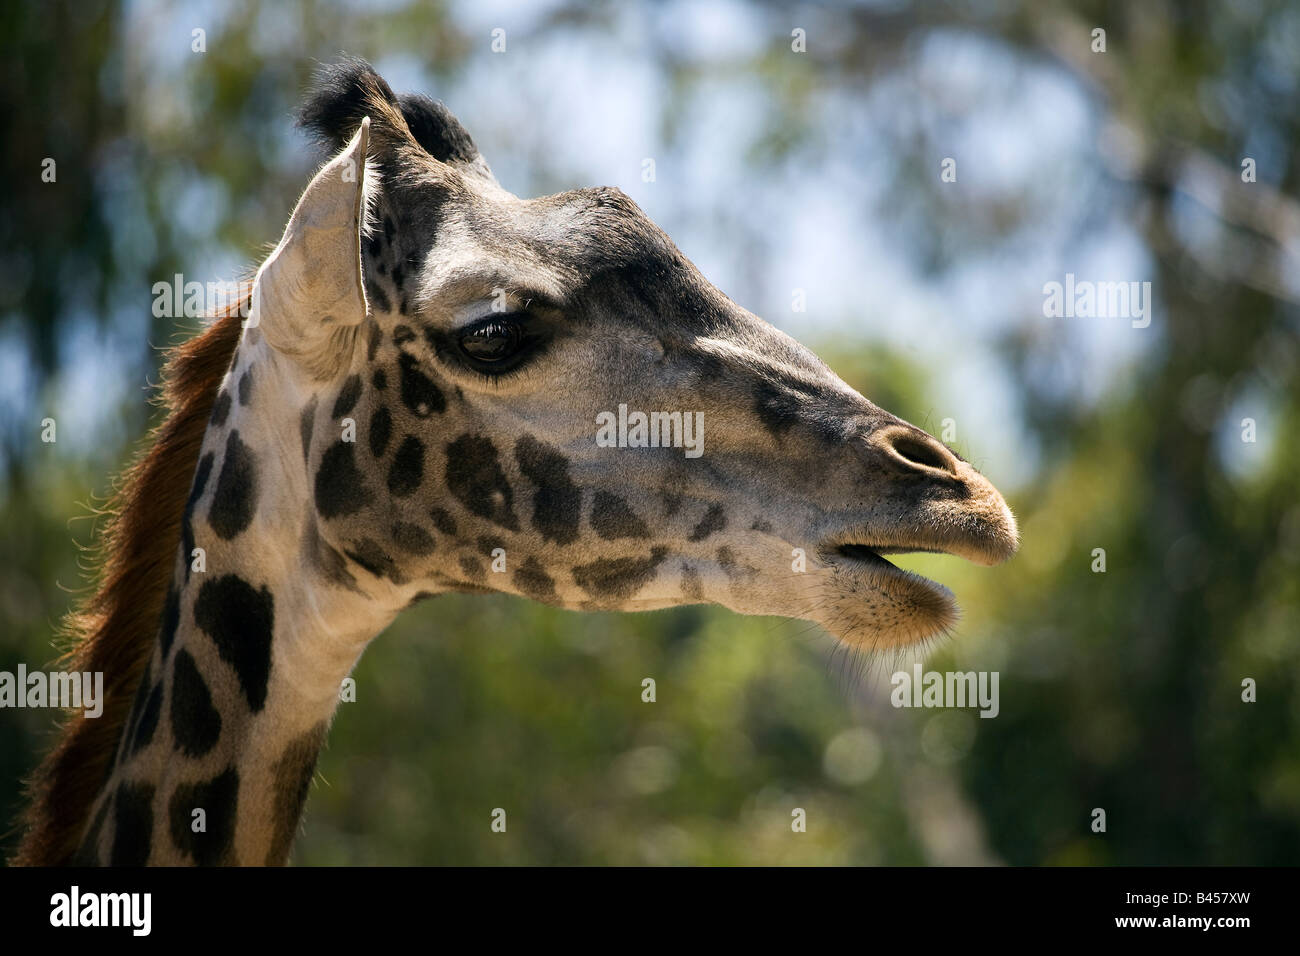 Giraffe (Giraffa camelopardalis) Stock Photo